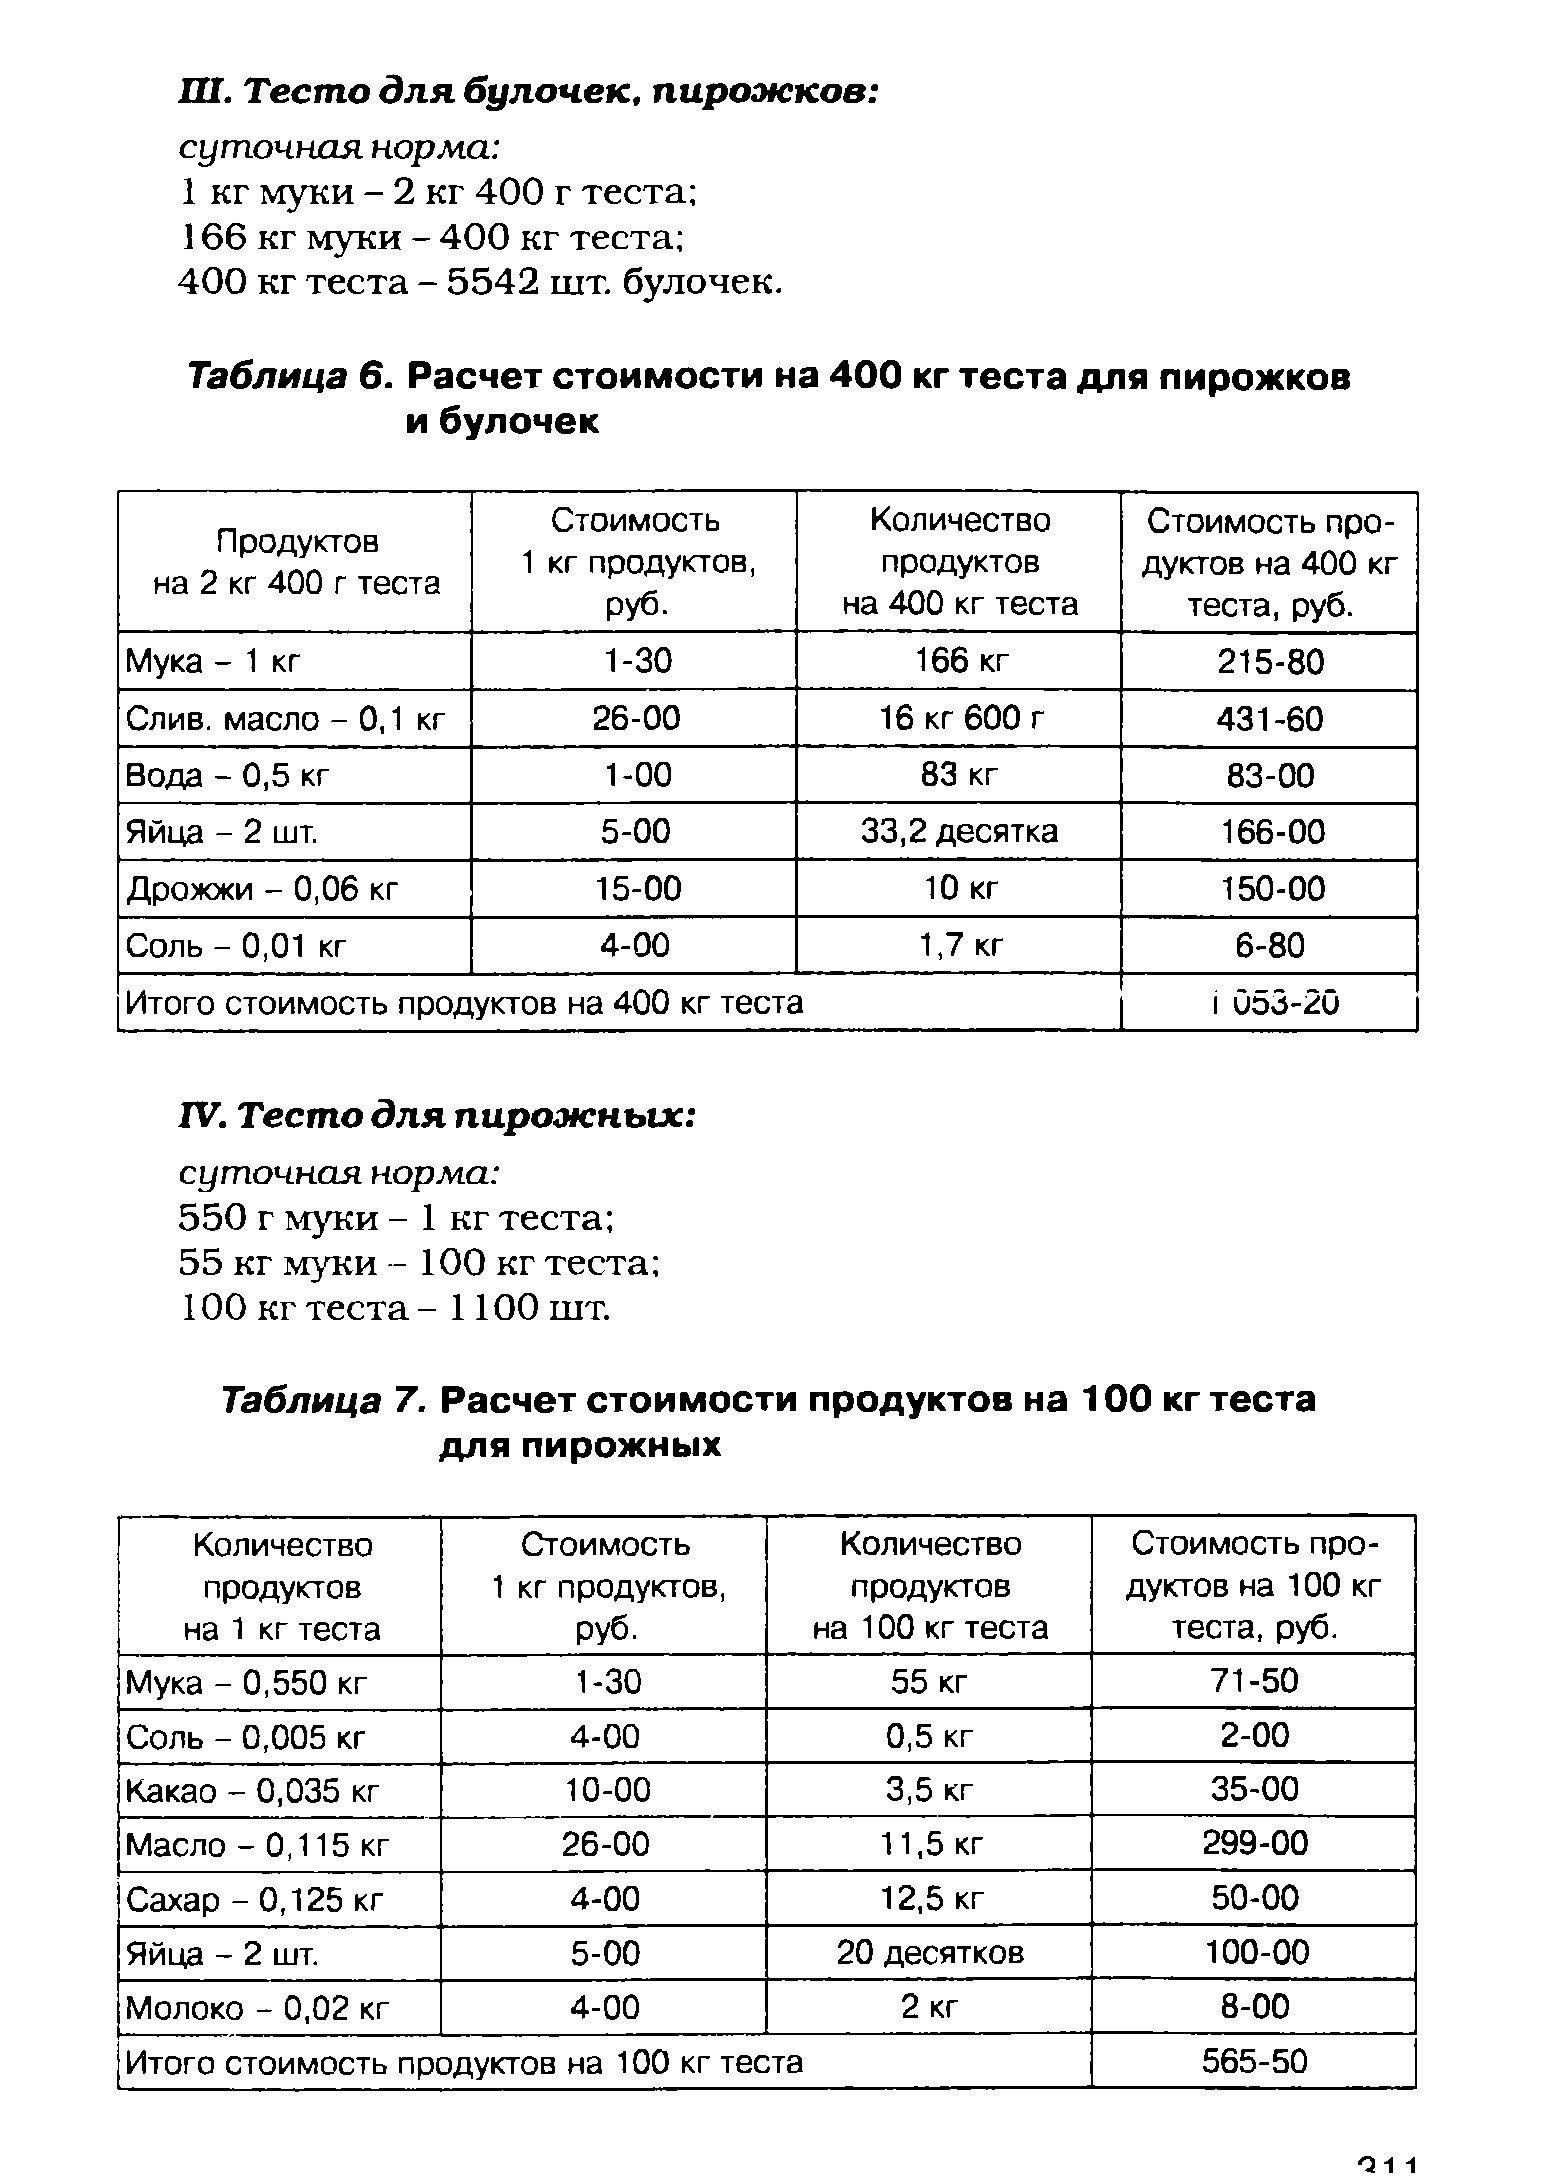 Таблица 7. Расчет стоимости продуктов на 100 кг теста для пирожных
